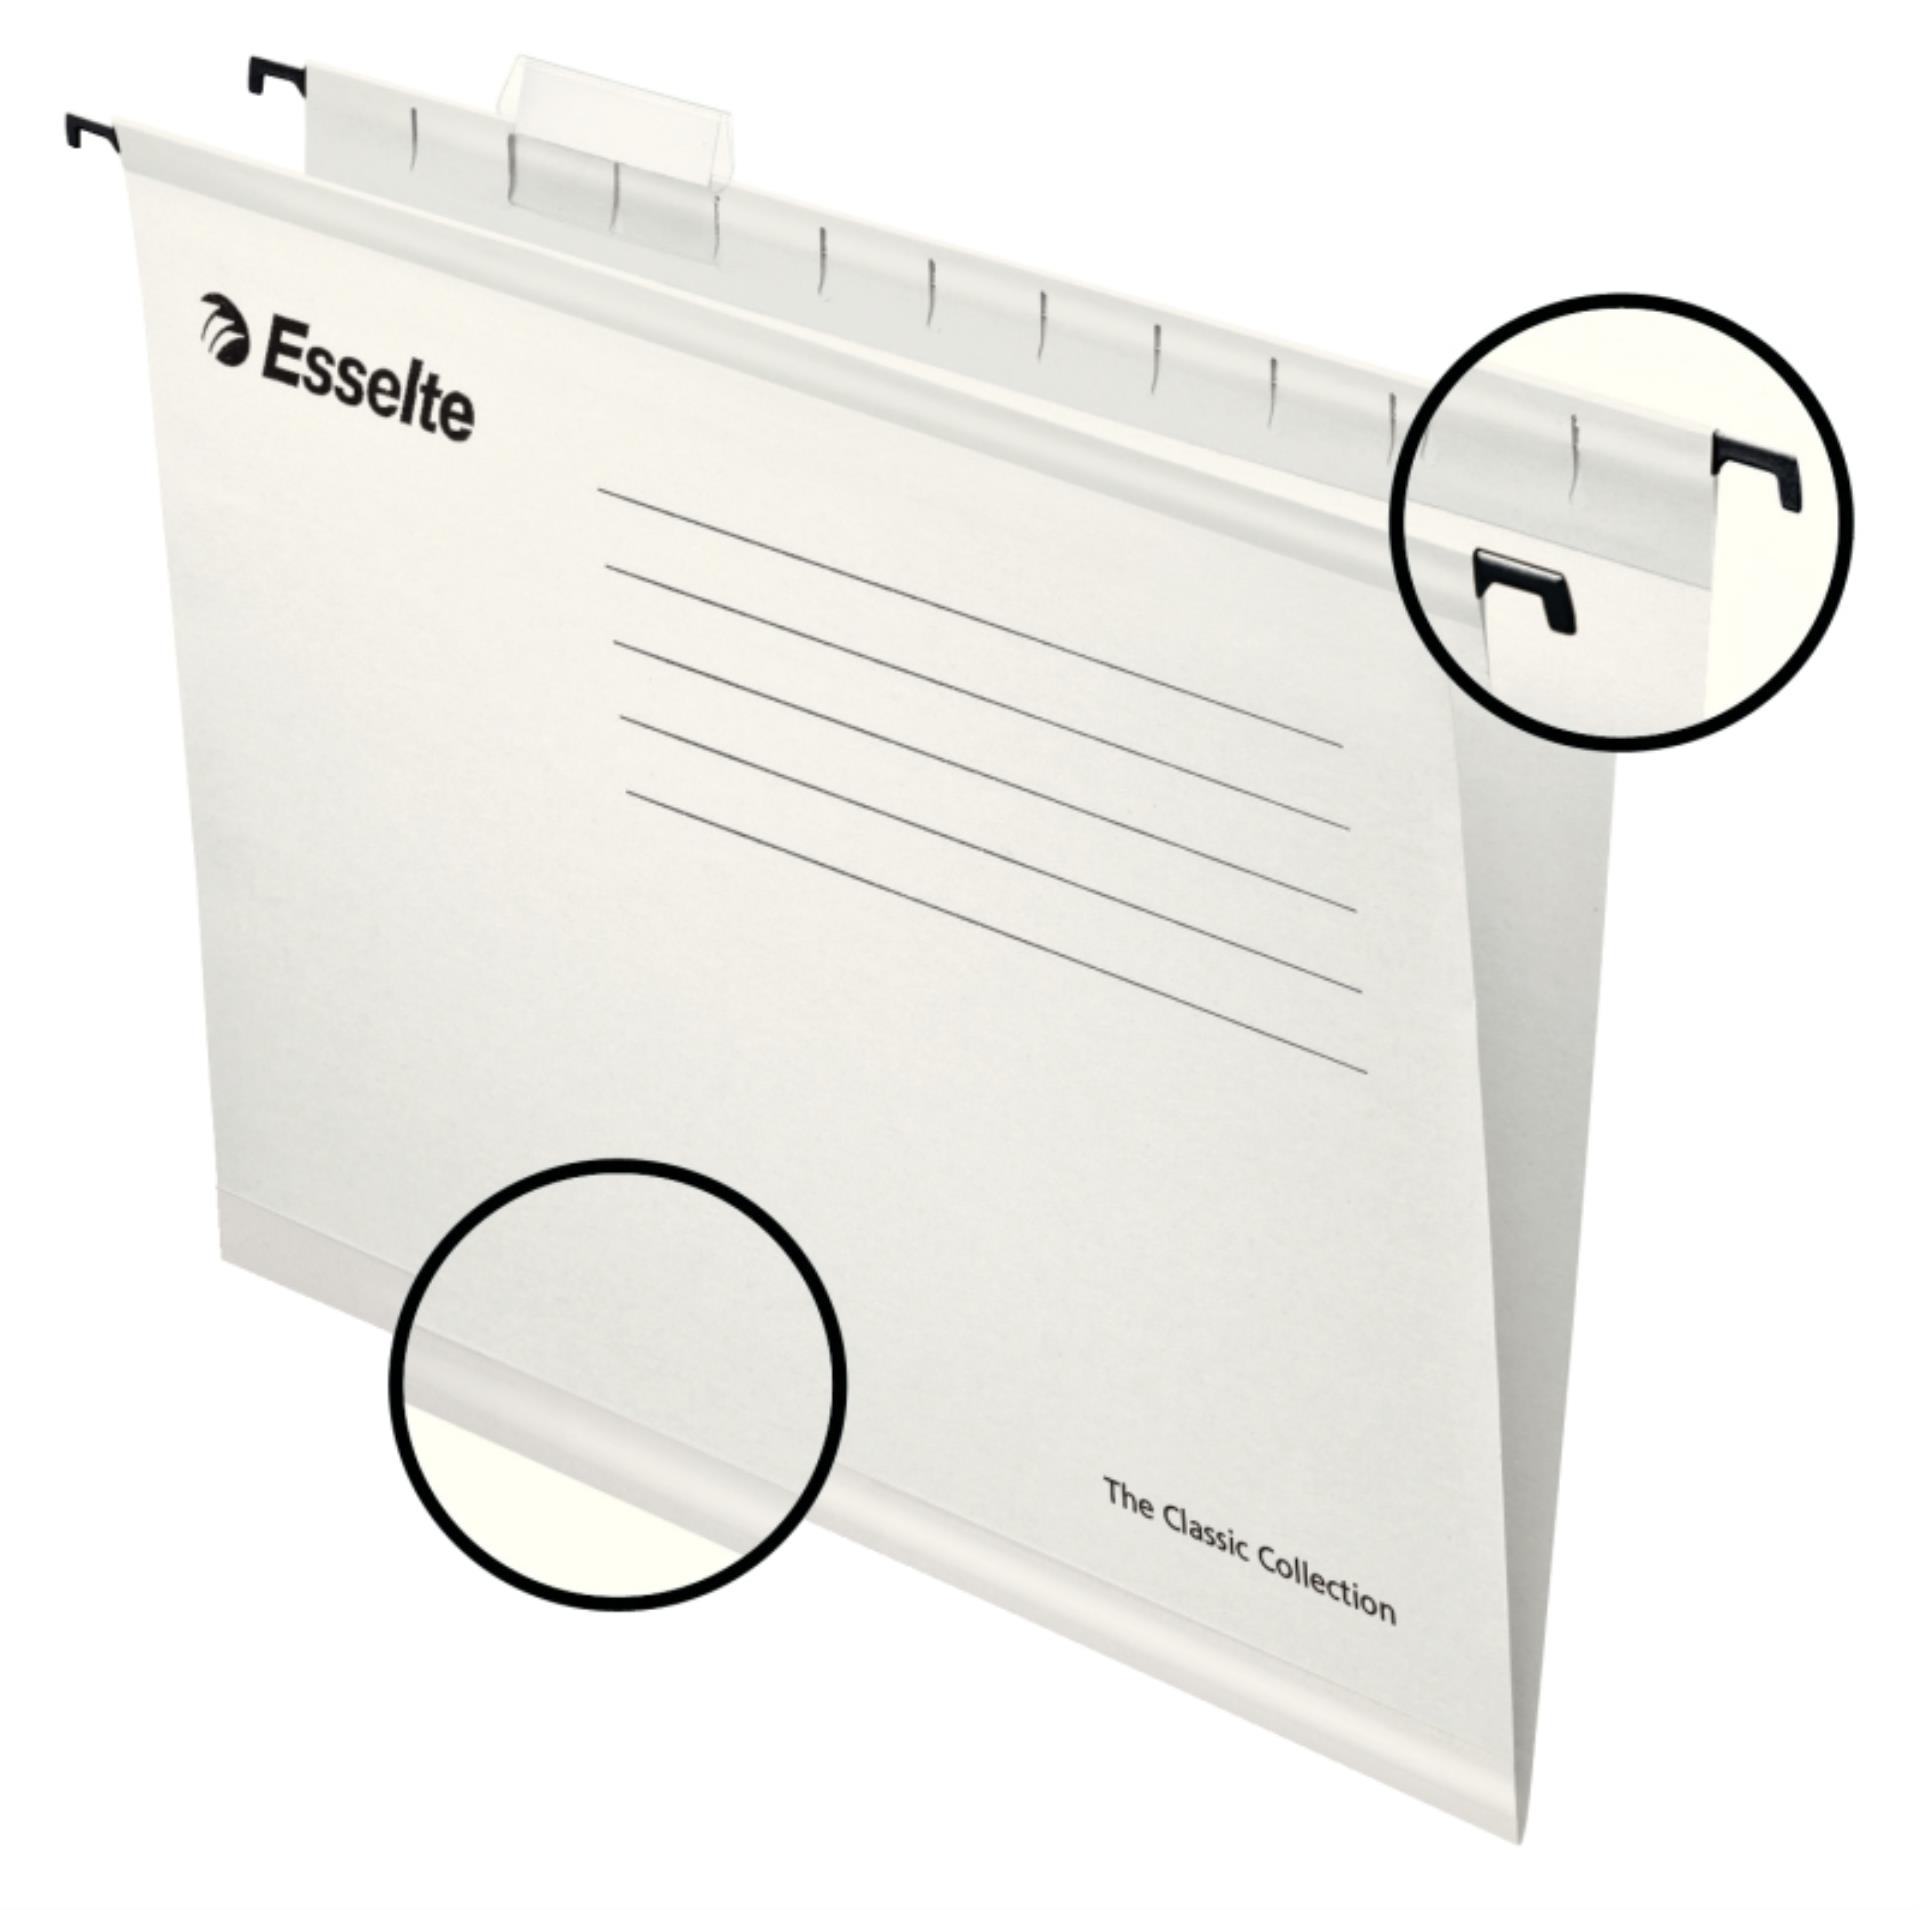 Esselte Papírové závěsné desky Pendaflex Standard, bílé, 25 ks